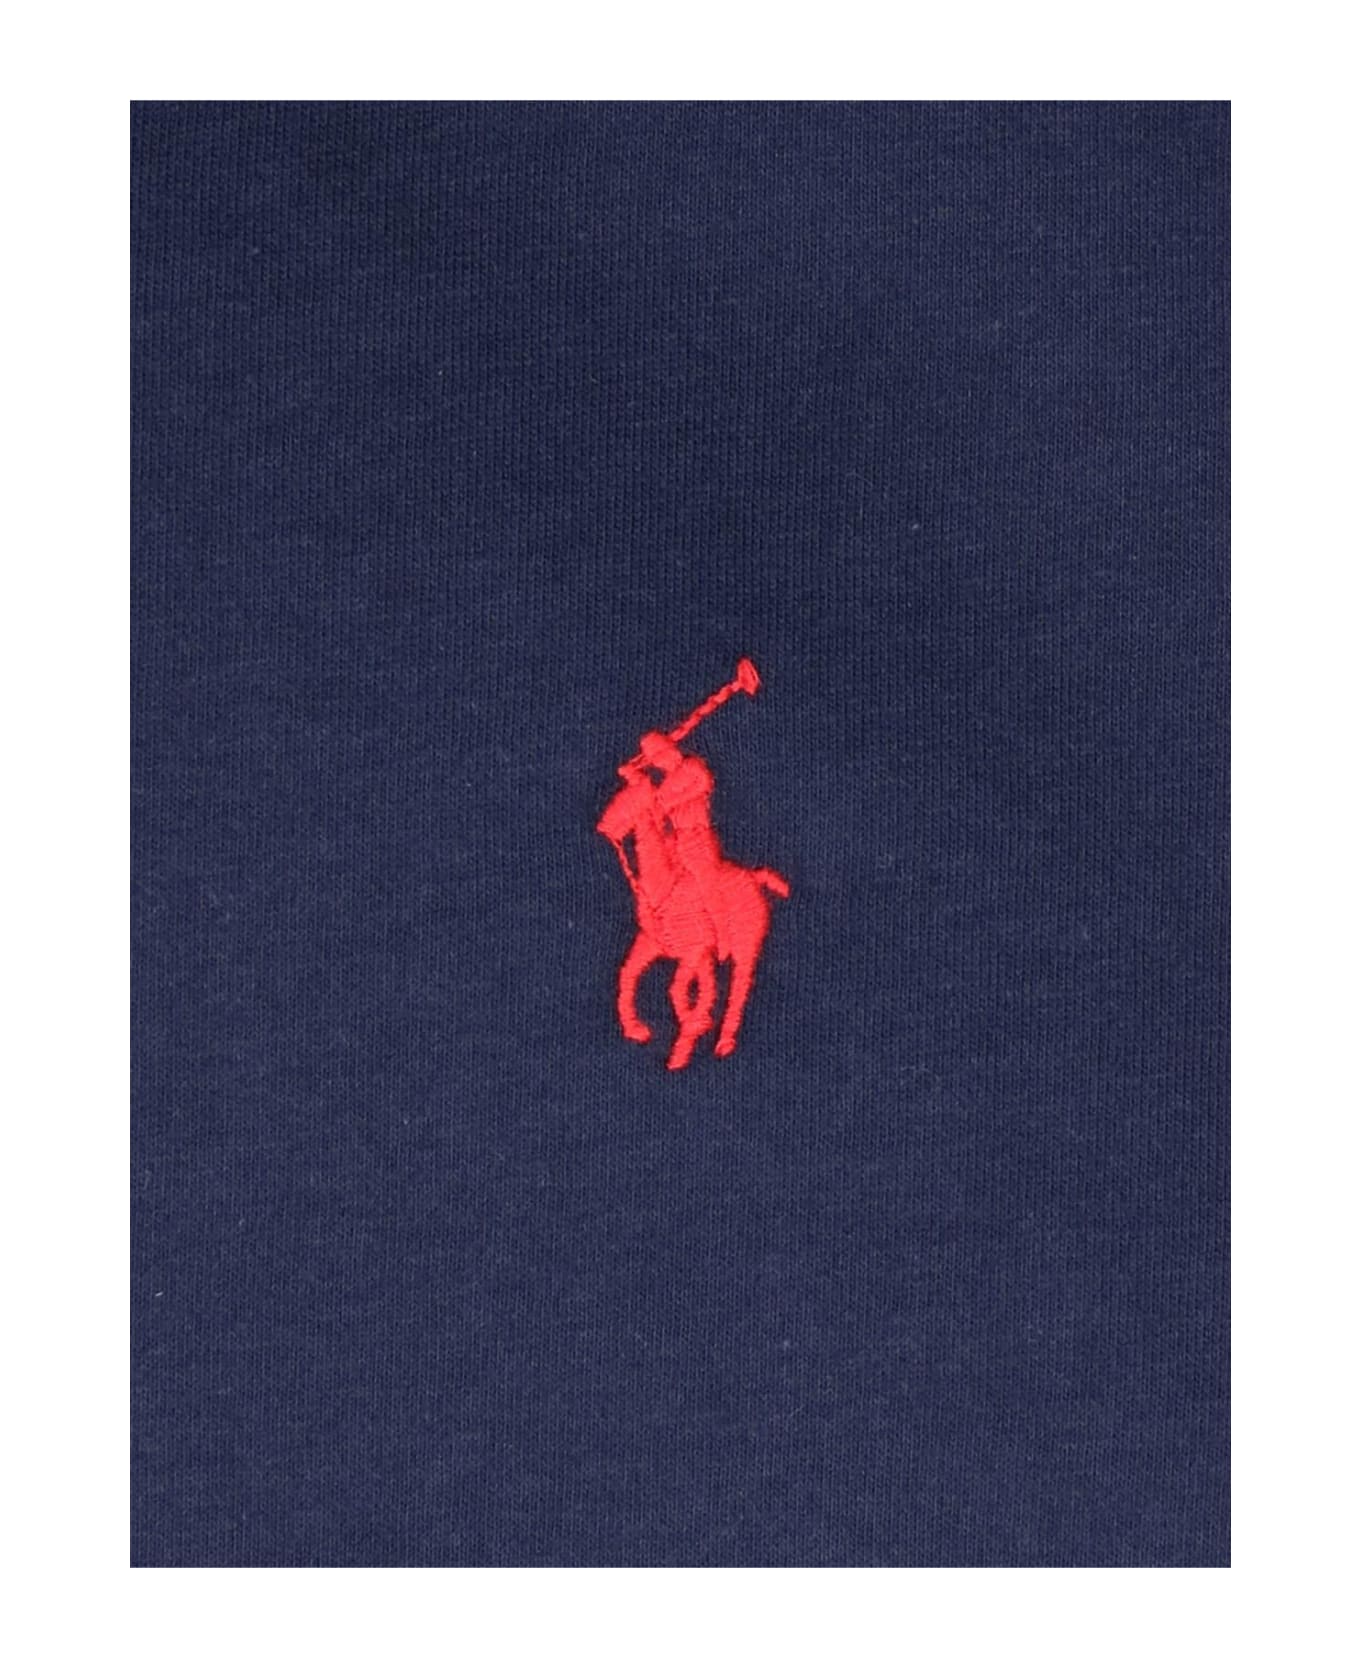 Ralph Lauren Logo T-shirt - BLUE